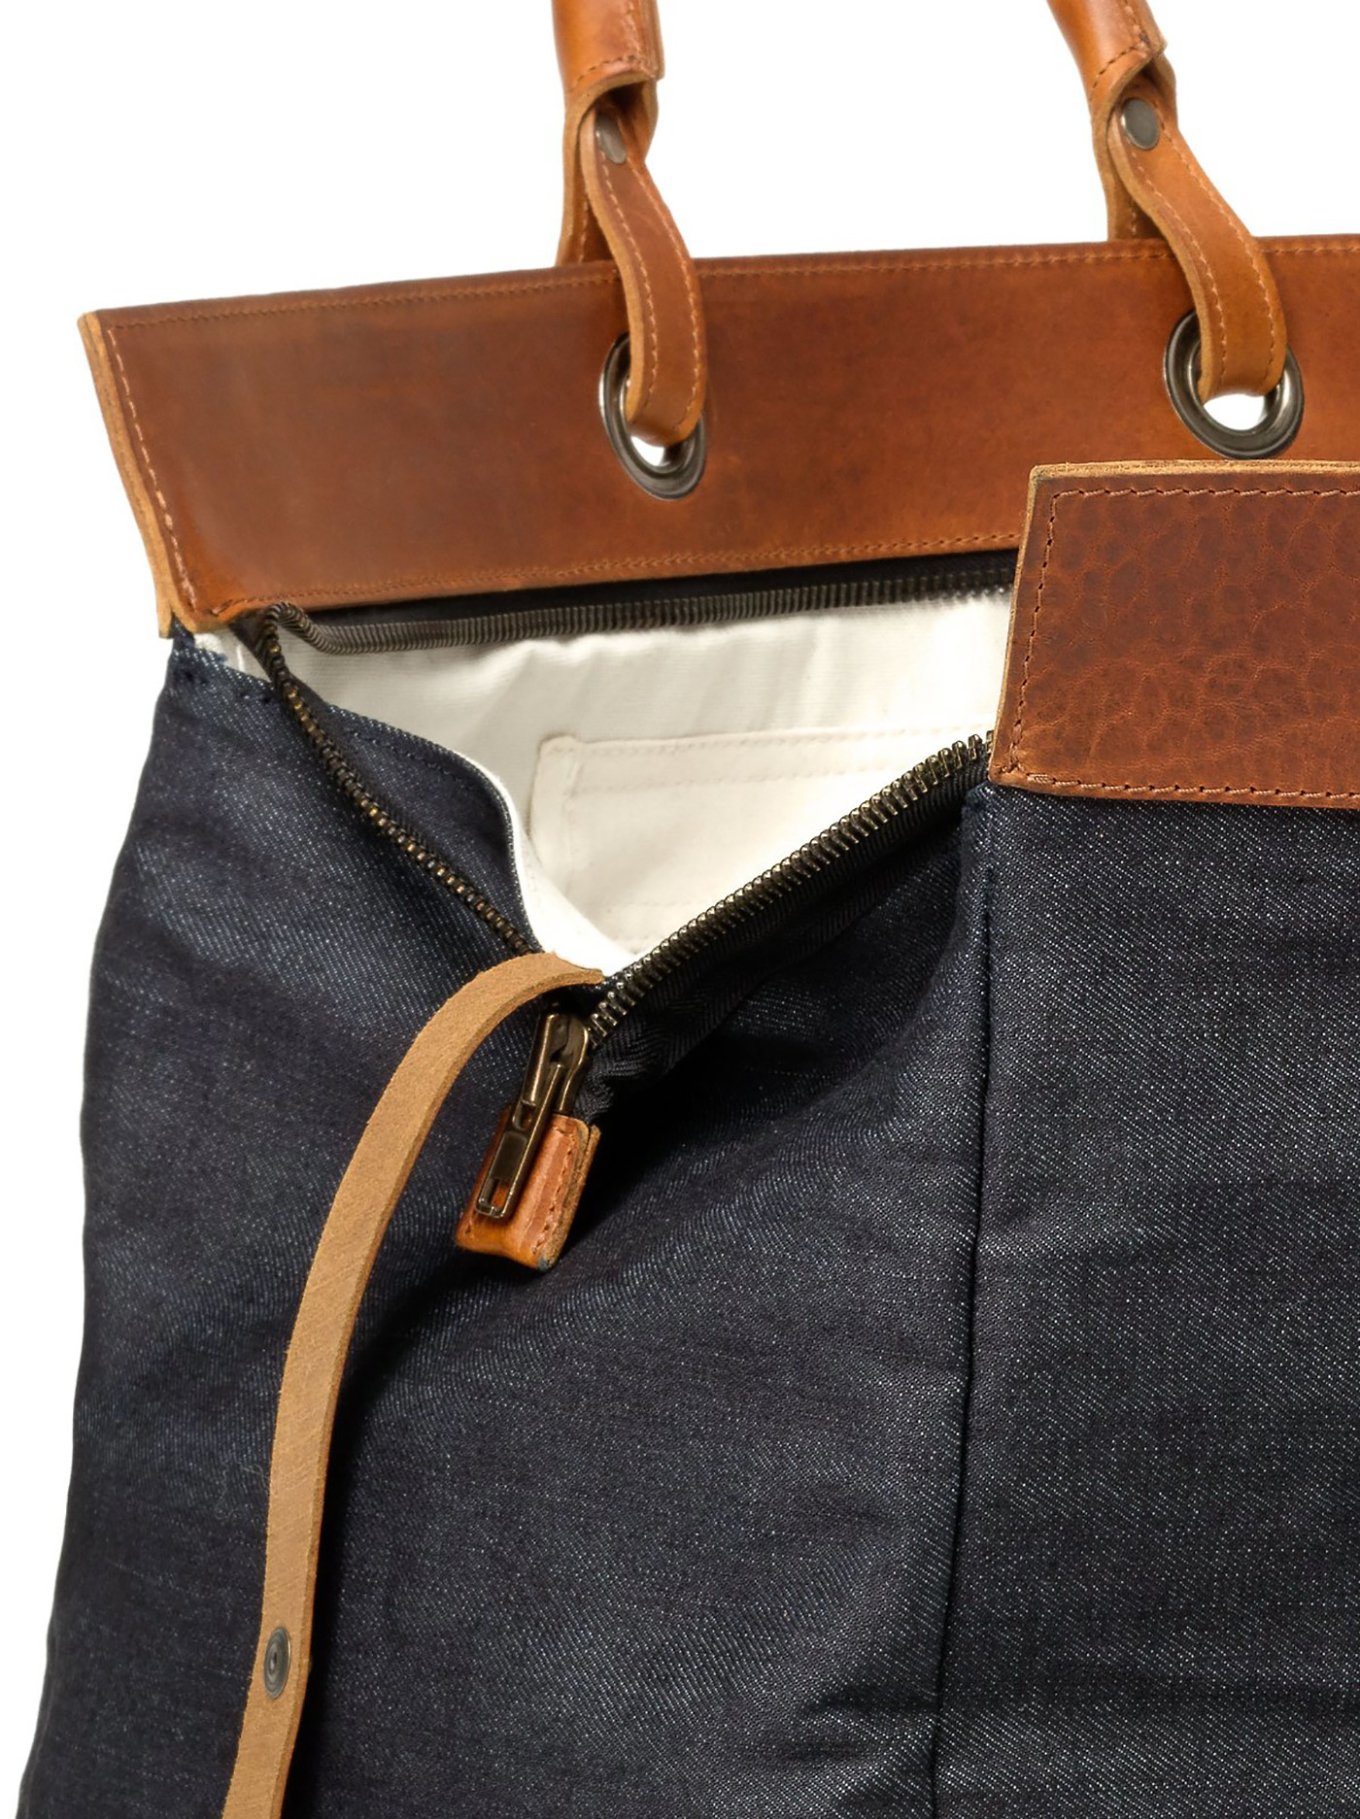 denim-leather-duffel-bag-nudie-jeans-6